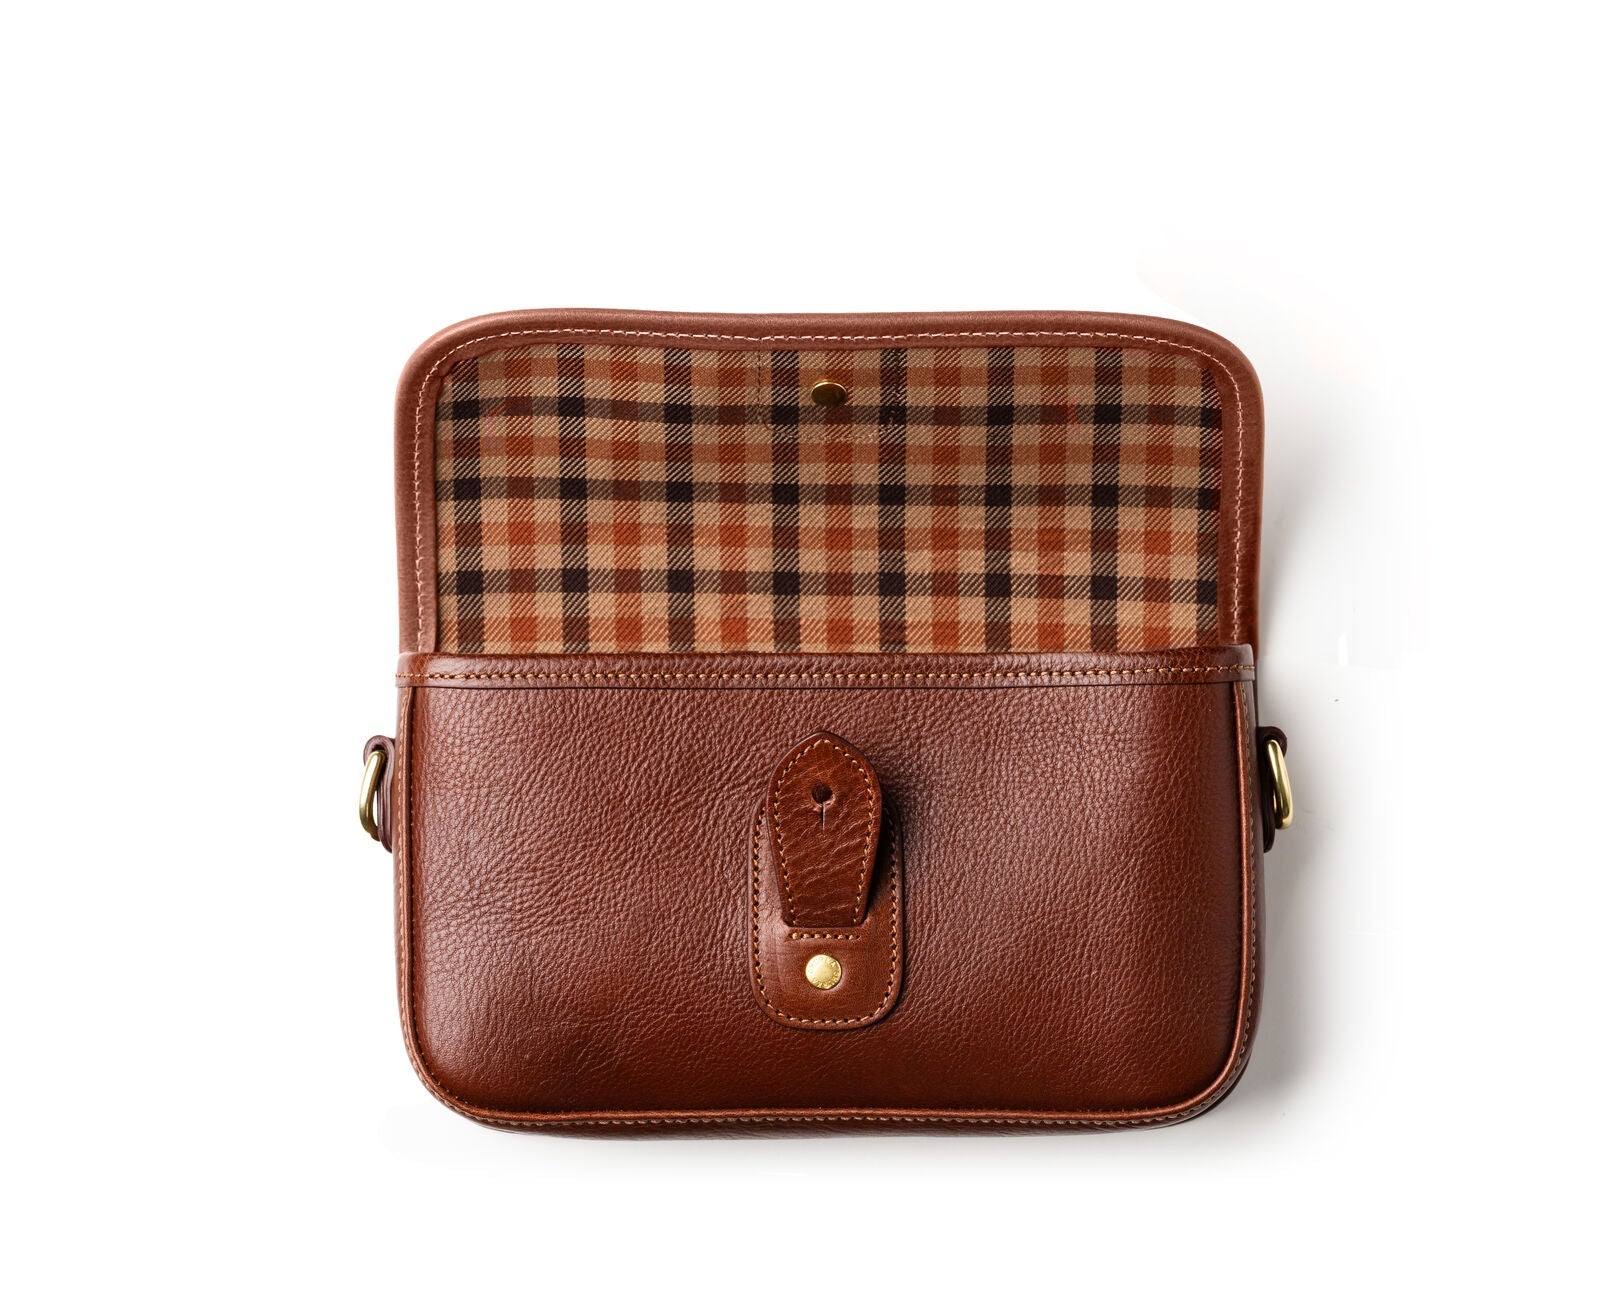 https://ghurka.com/cdn/shop/products/harlow-i-no-203-vintage-chestnut-leather-197018.jpg?v=1694116662